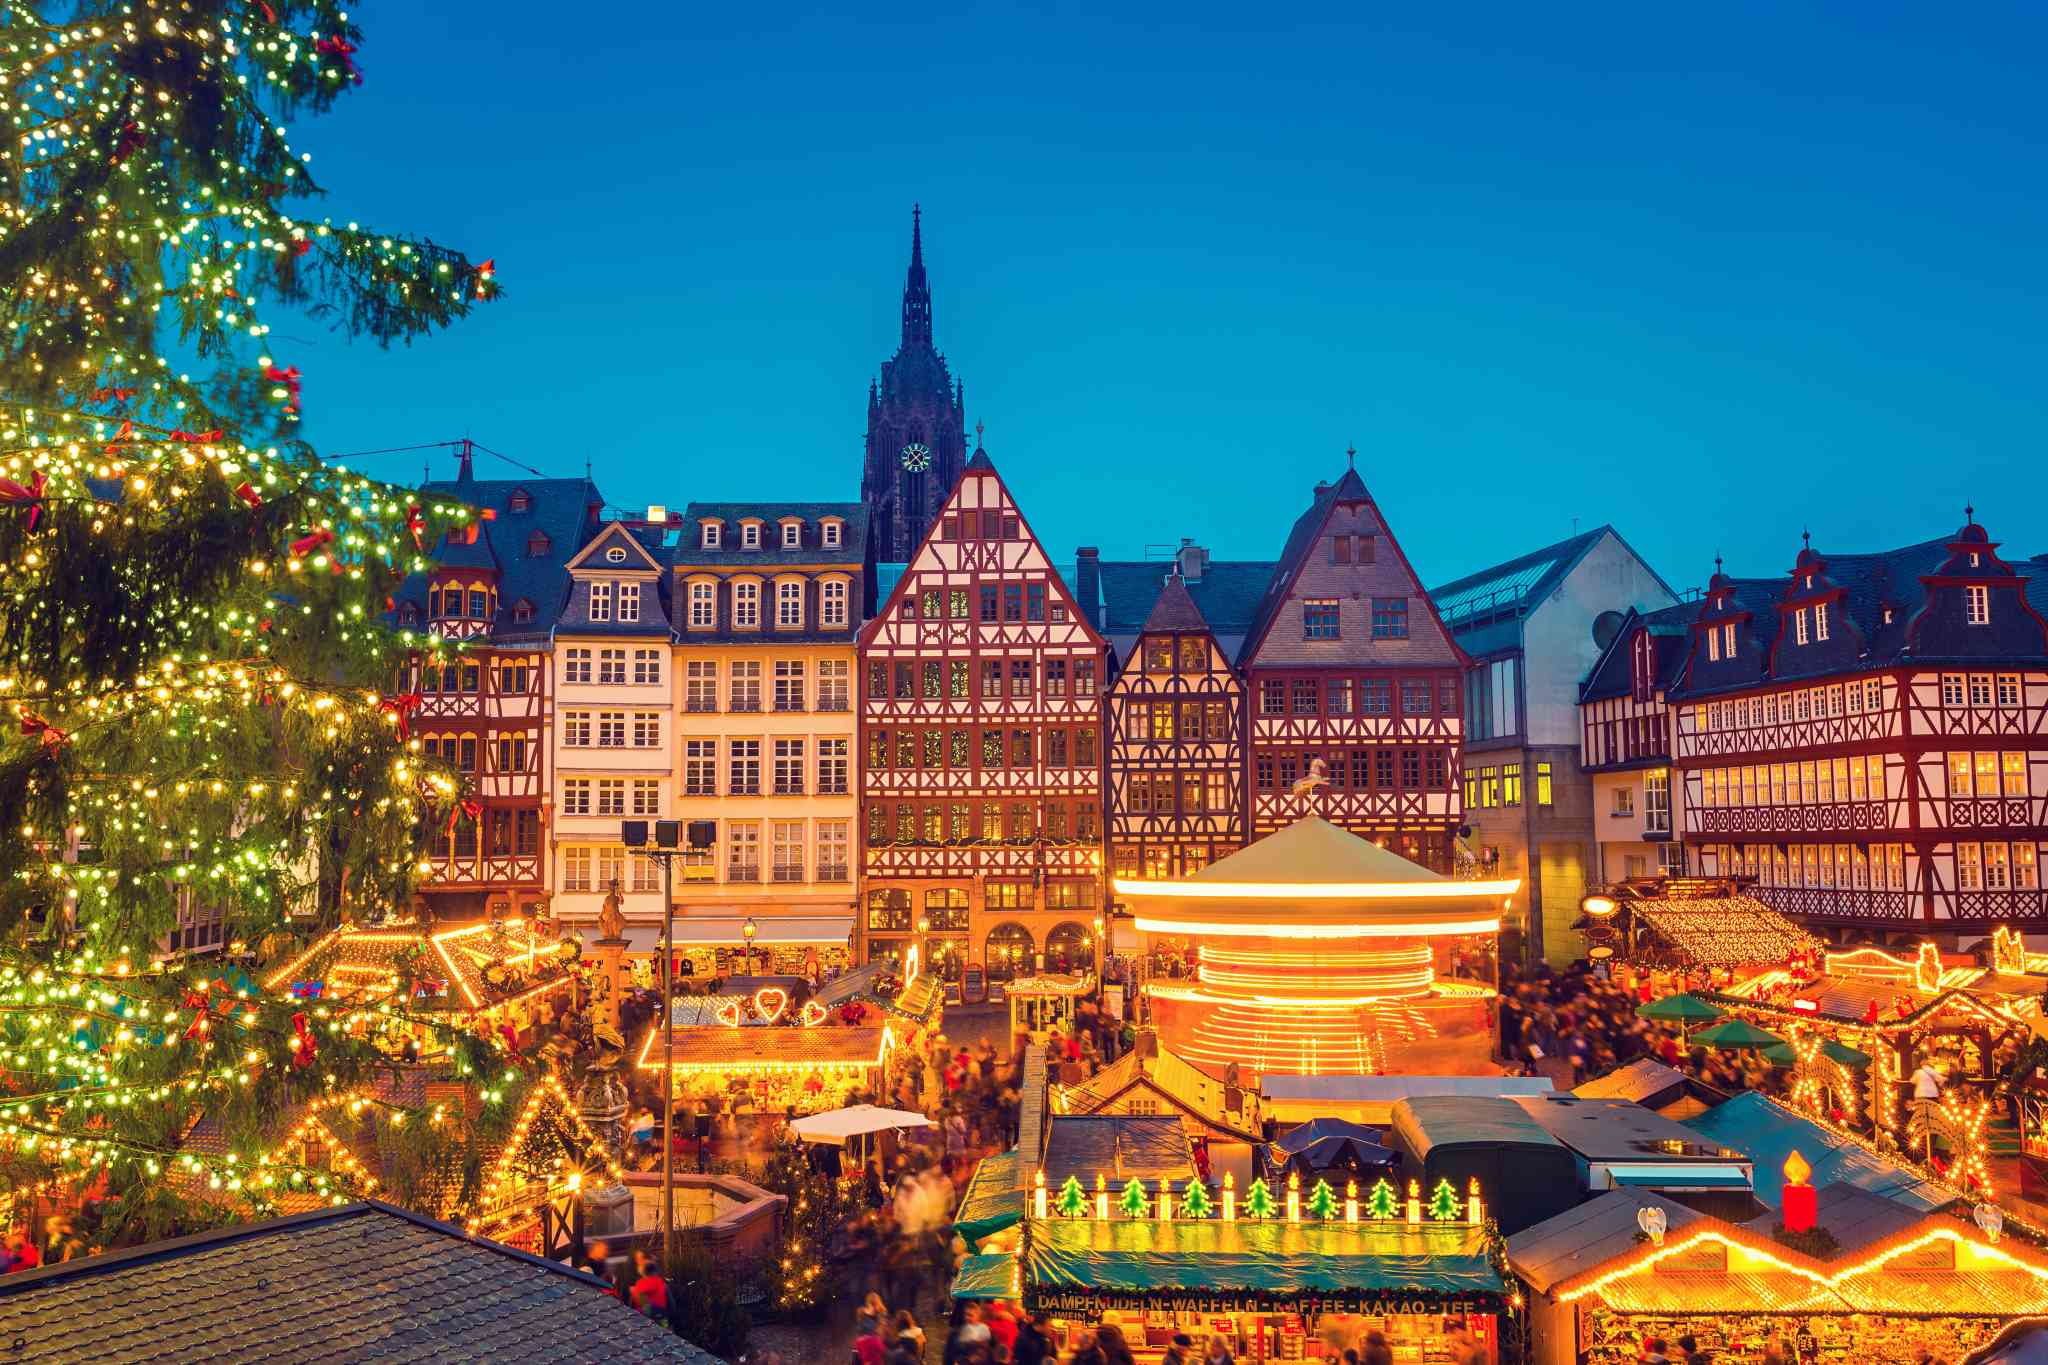 Visit 4 Famous German Christmas Markets